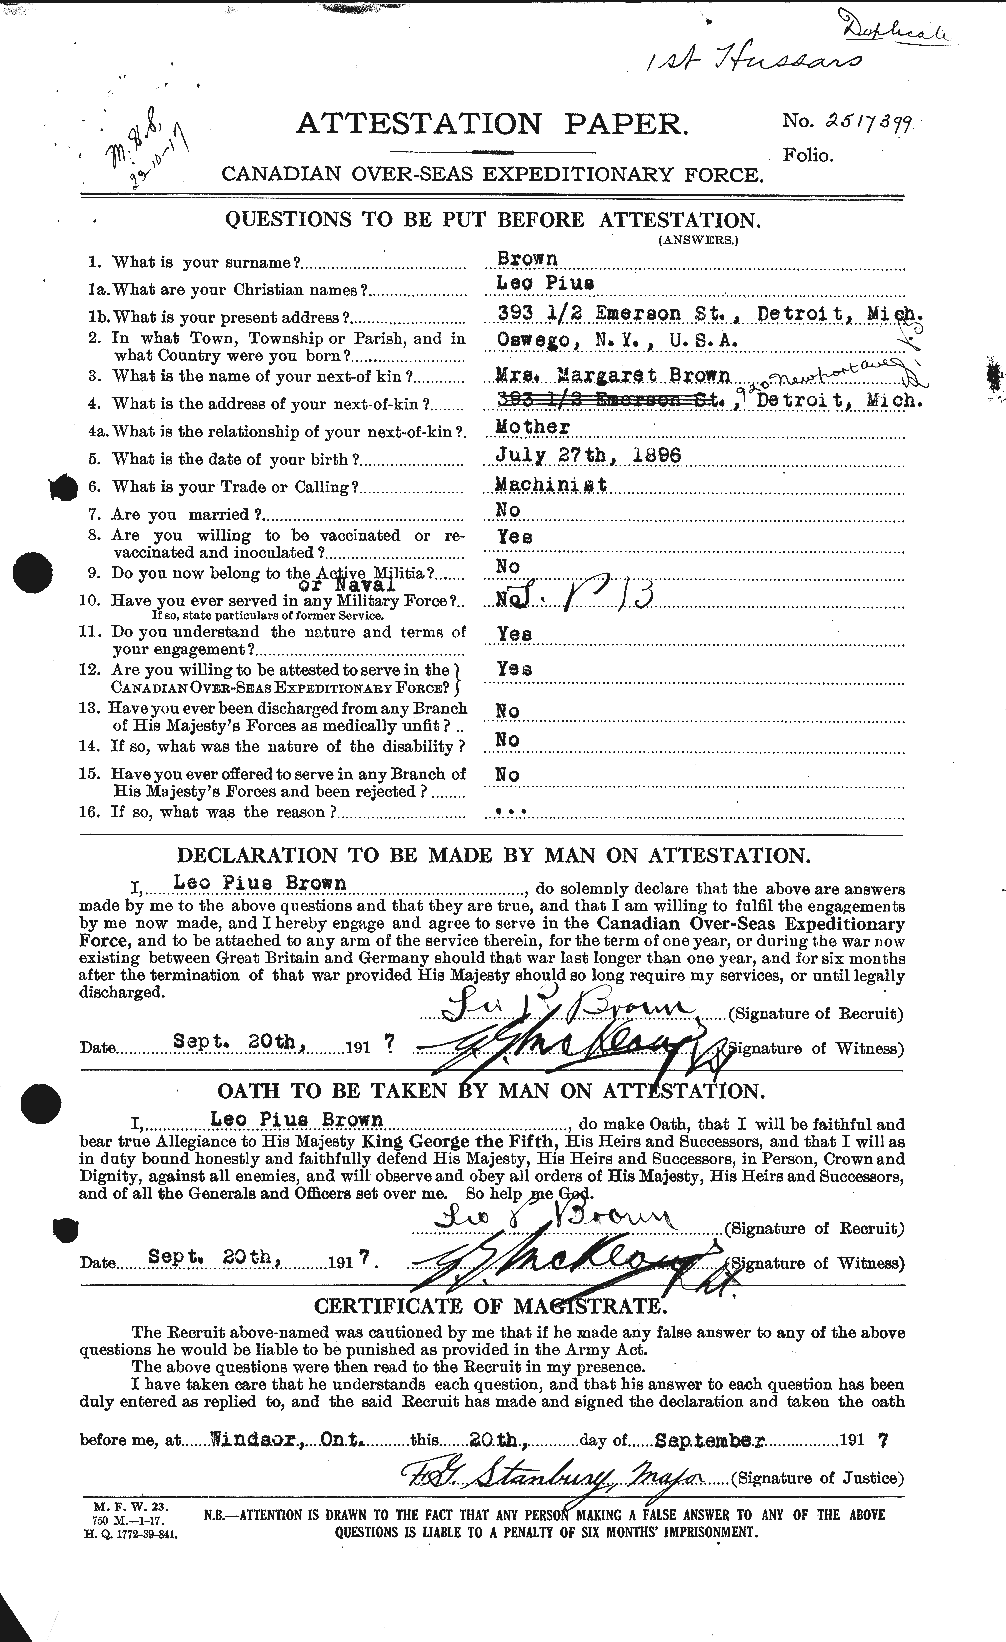 Dossiers du Personnel de la Première Guerre mondiale - CEC 266284a